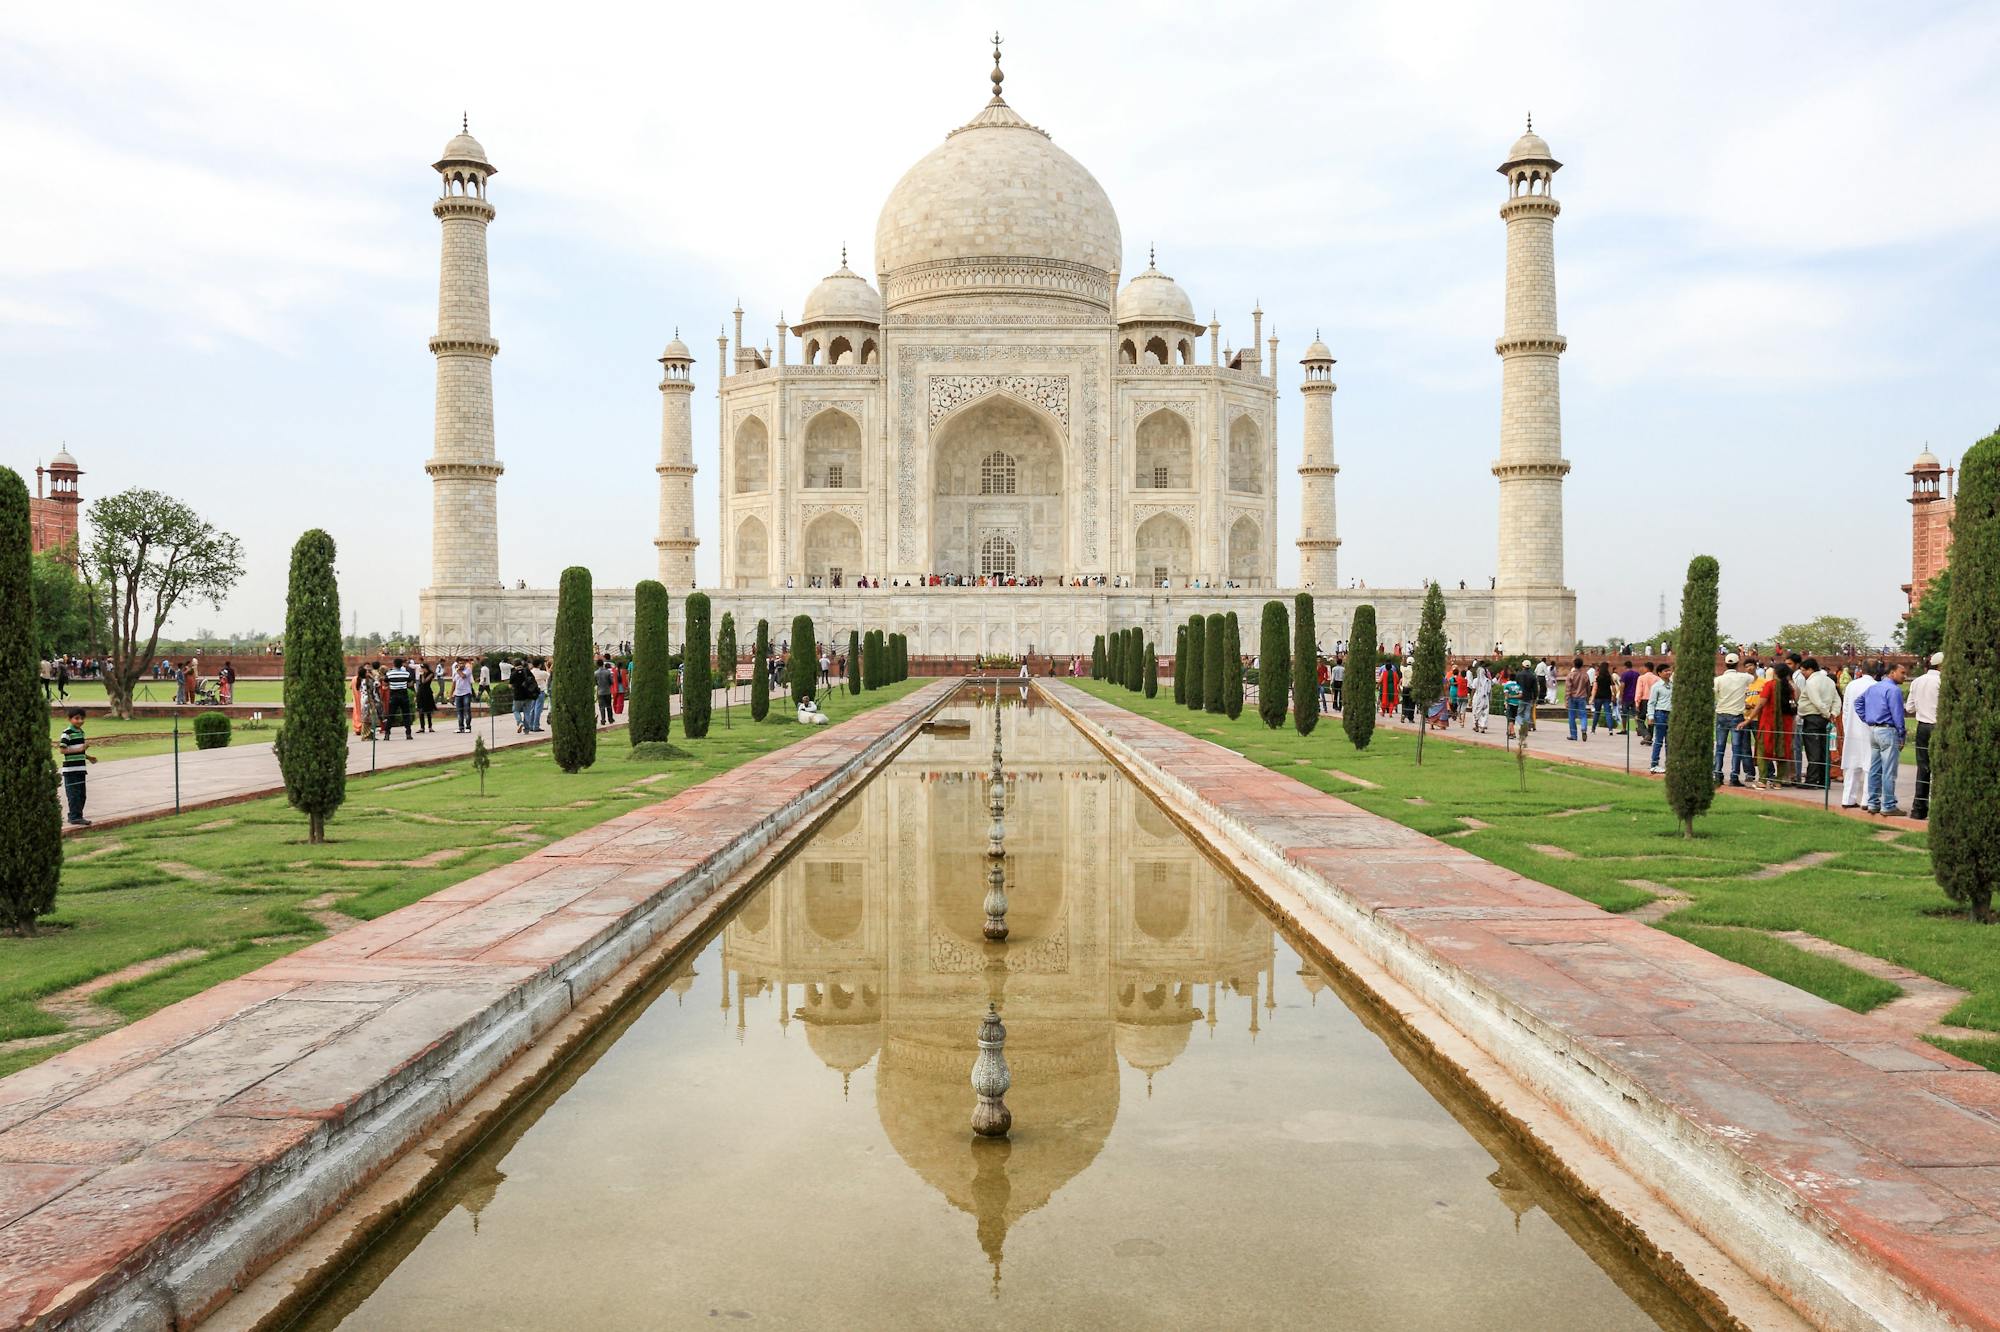 Blick auf den Taj Mahal. Mittig läuft befindet sich ein langgezogener Brunnen, der auf das Mausoleum zuläuft. Drum herum tummeln sich zahlreiche Touristen.